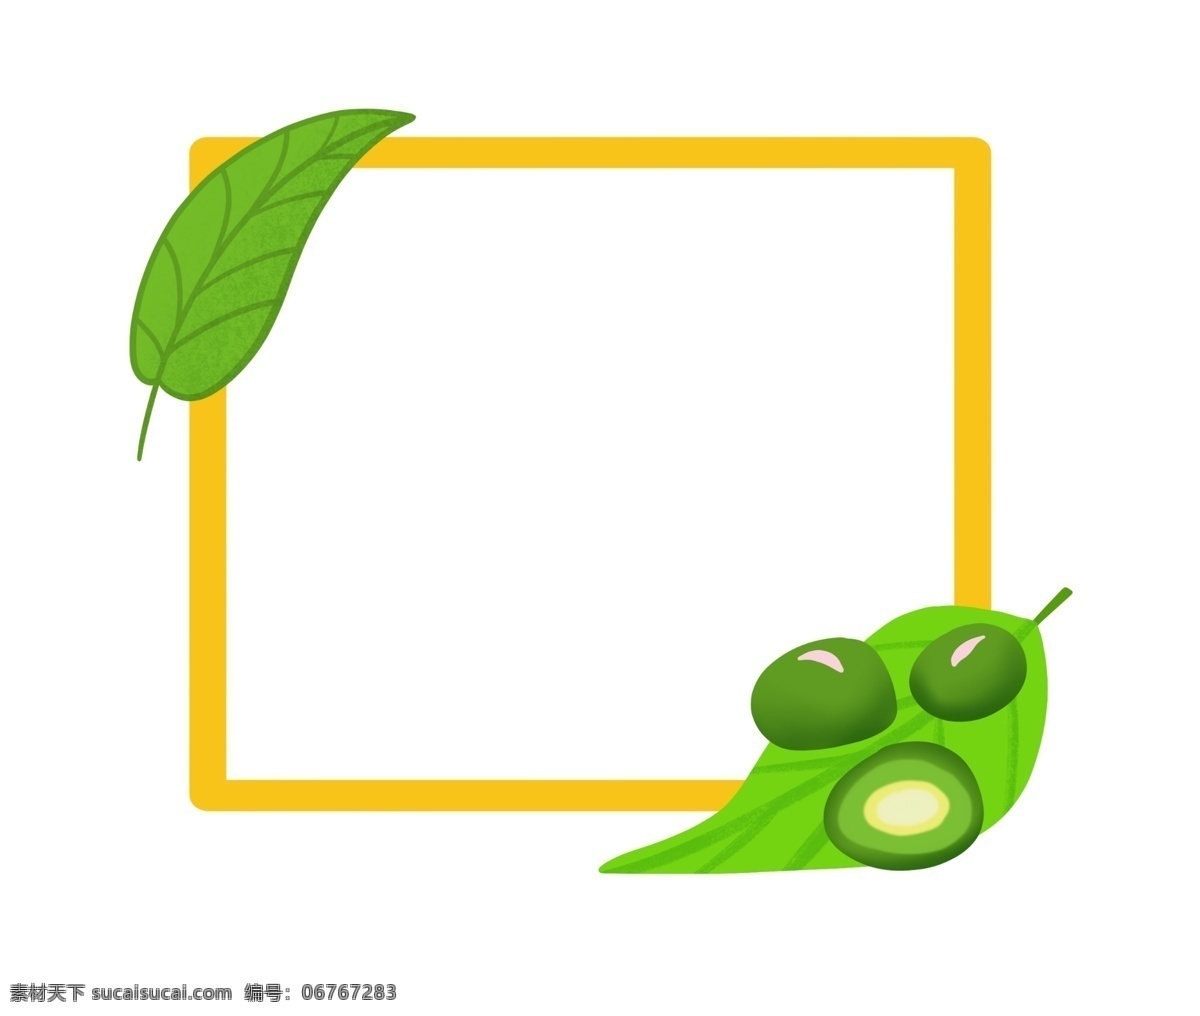 黄色 边框 卡通 插画 黄色的边框 卡通插画 边框插画 简易边框 装饰边框 框架 绿色的豆子